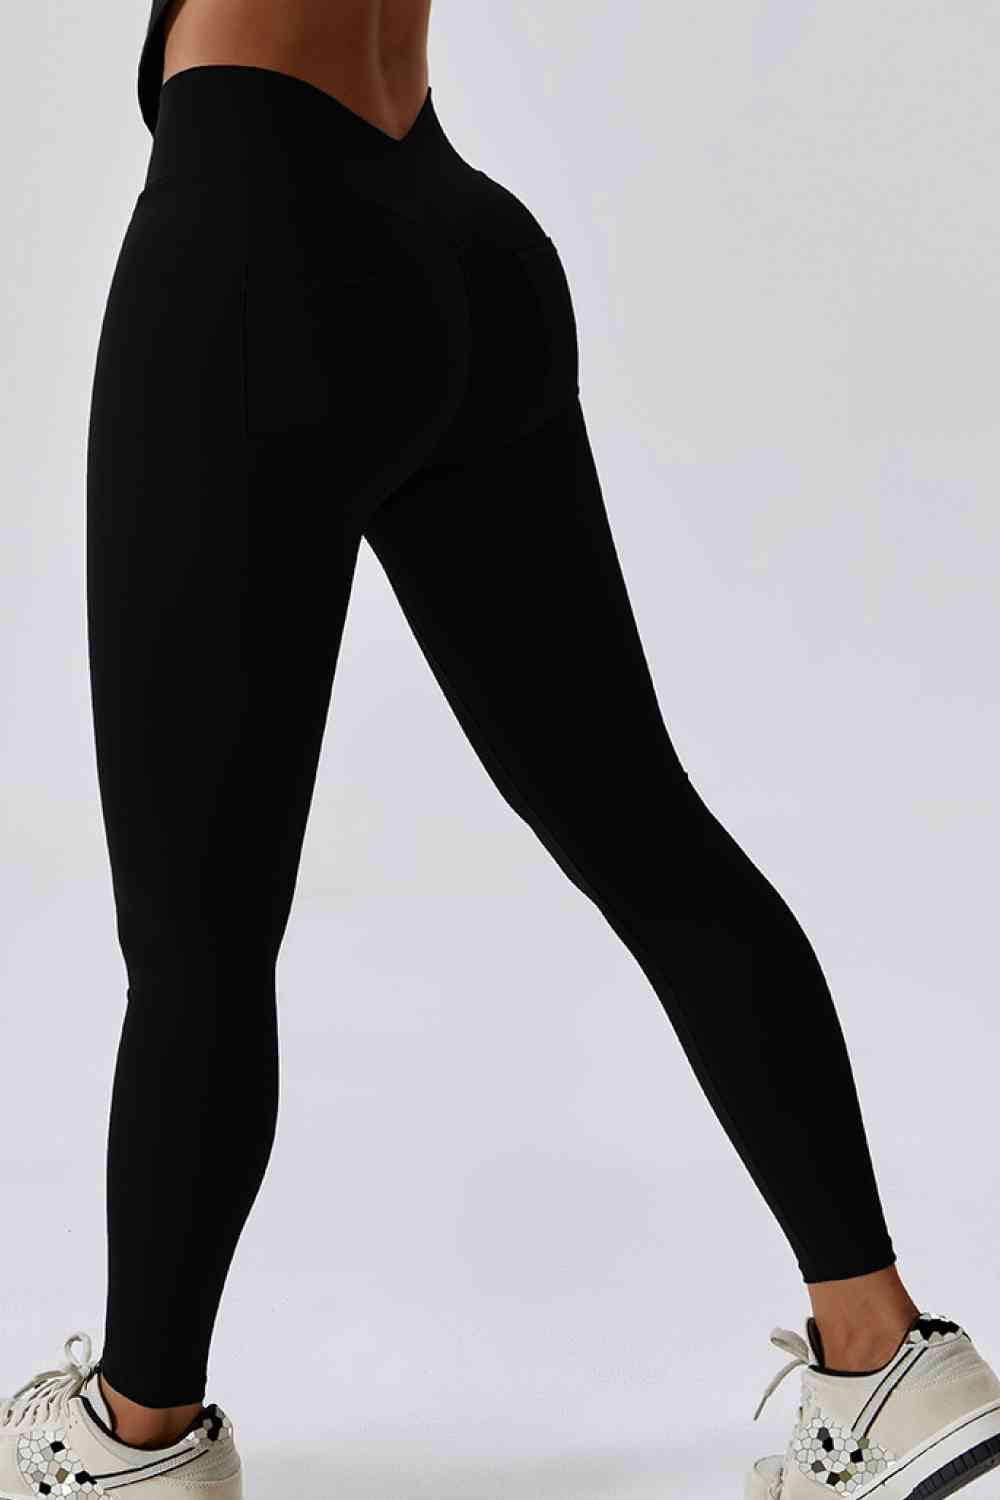 Trendsi leggins Black / S Wide Waistband Slim Fit Back Pocket Sports Leggings